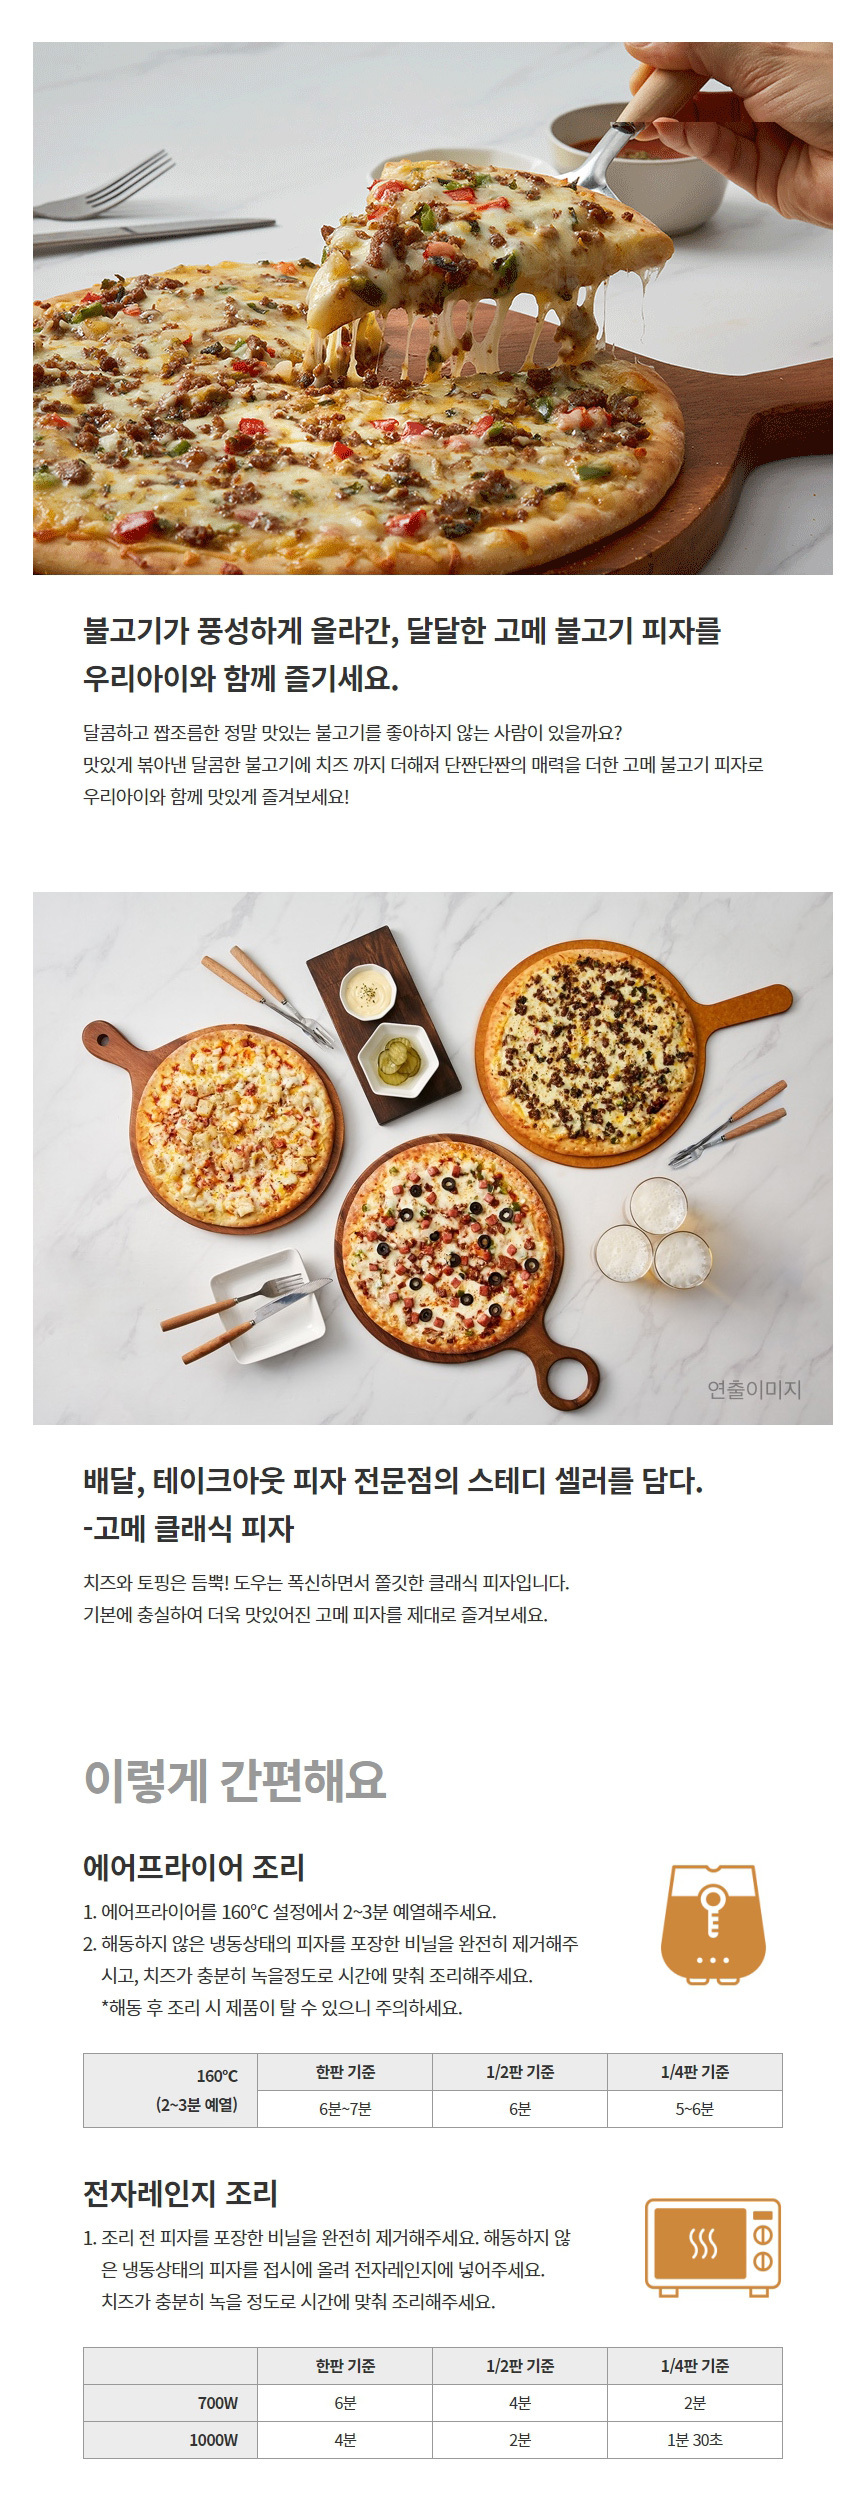 韓國食品-[CJ] Gourmet Bulgogi Pizza 405g